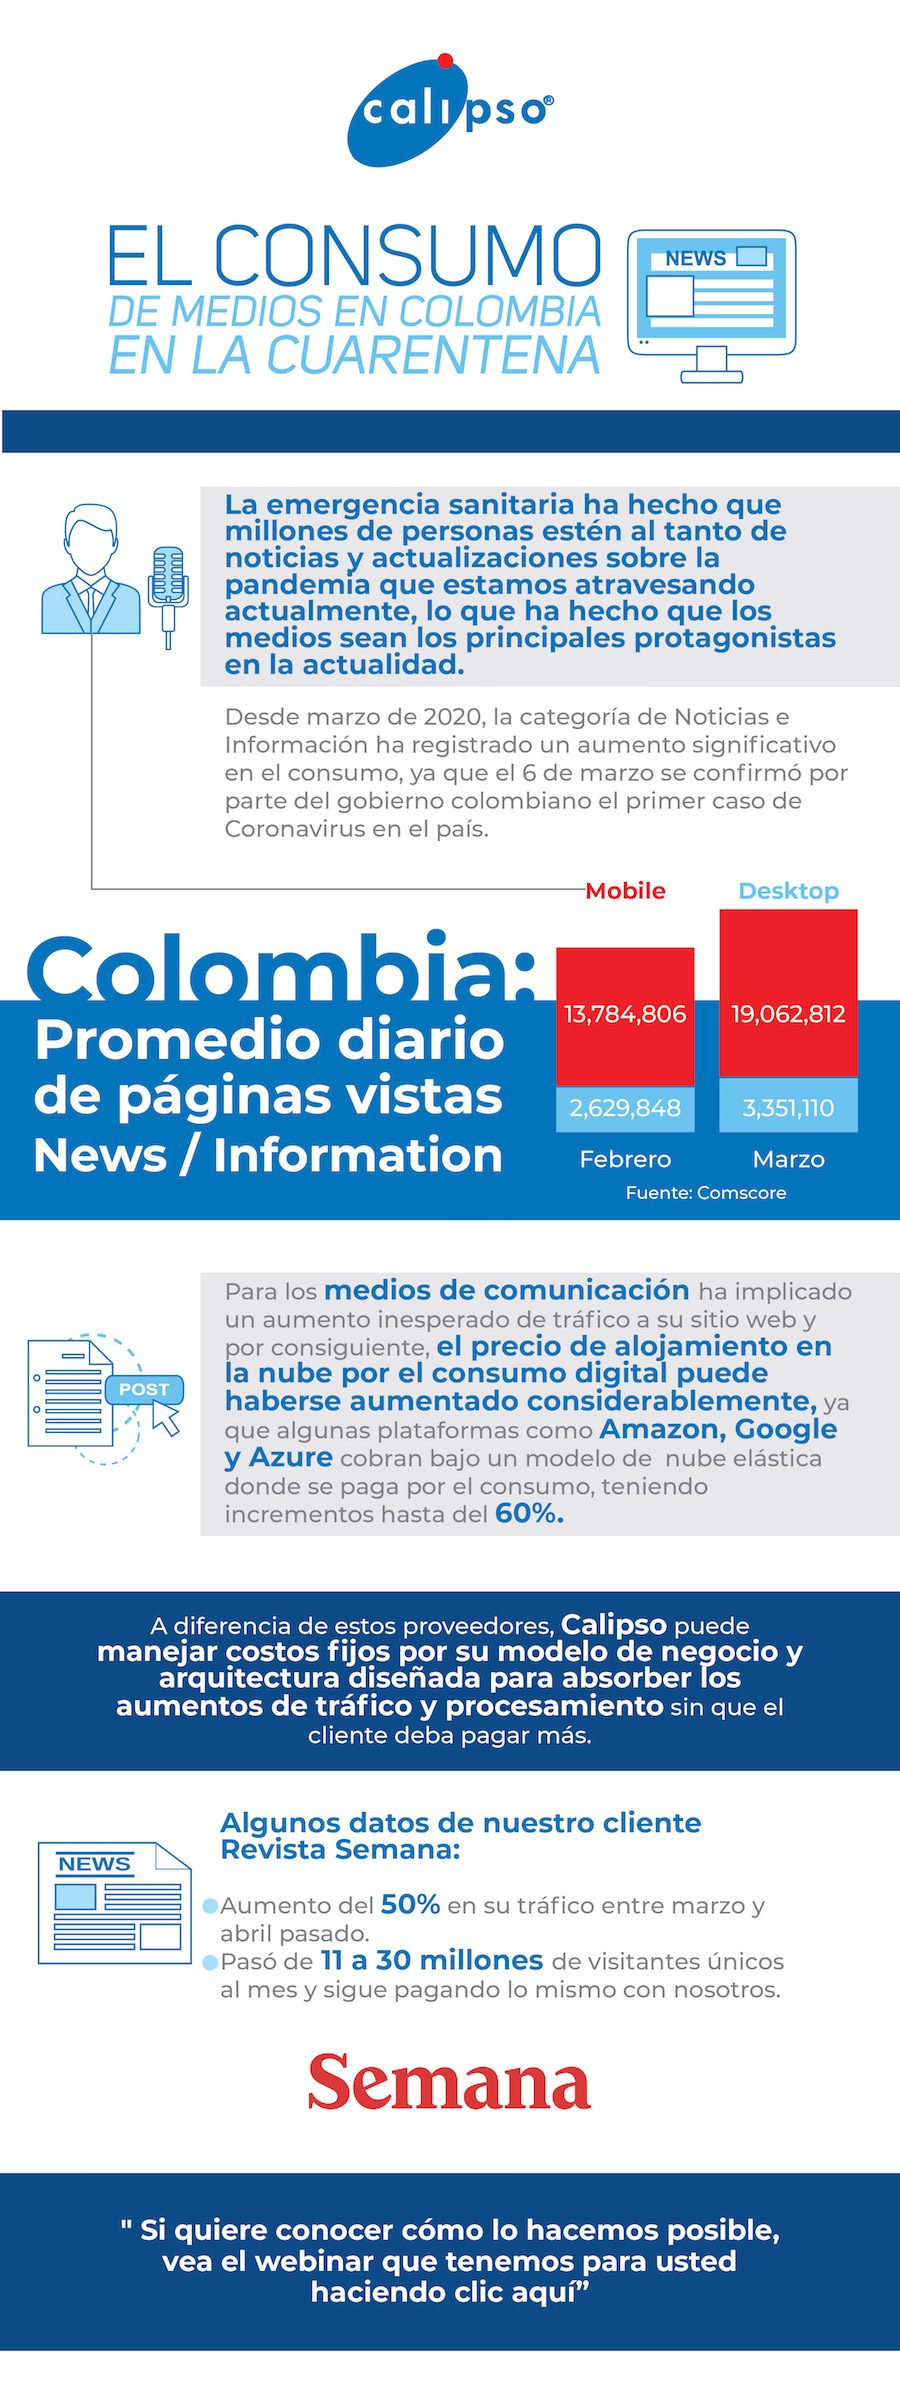 El Consumo de Medios en Colombia durante la Cuarentena